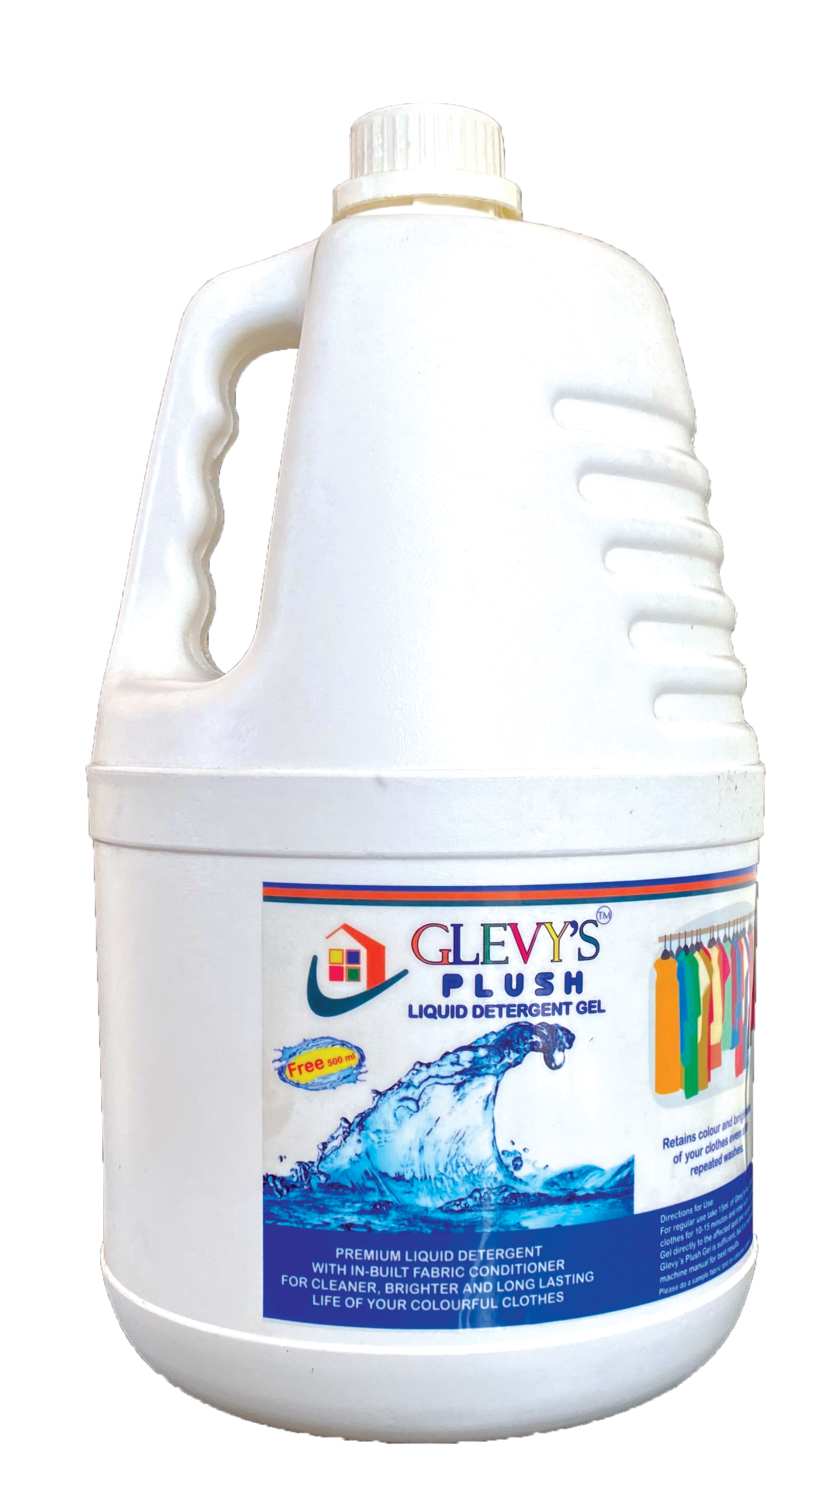 GLEVY'S Plush Liquid Detergent Gel - 5 Liter